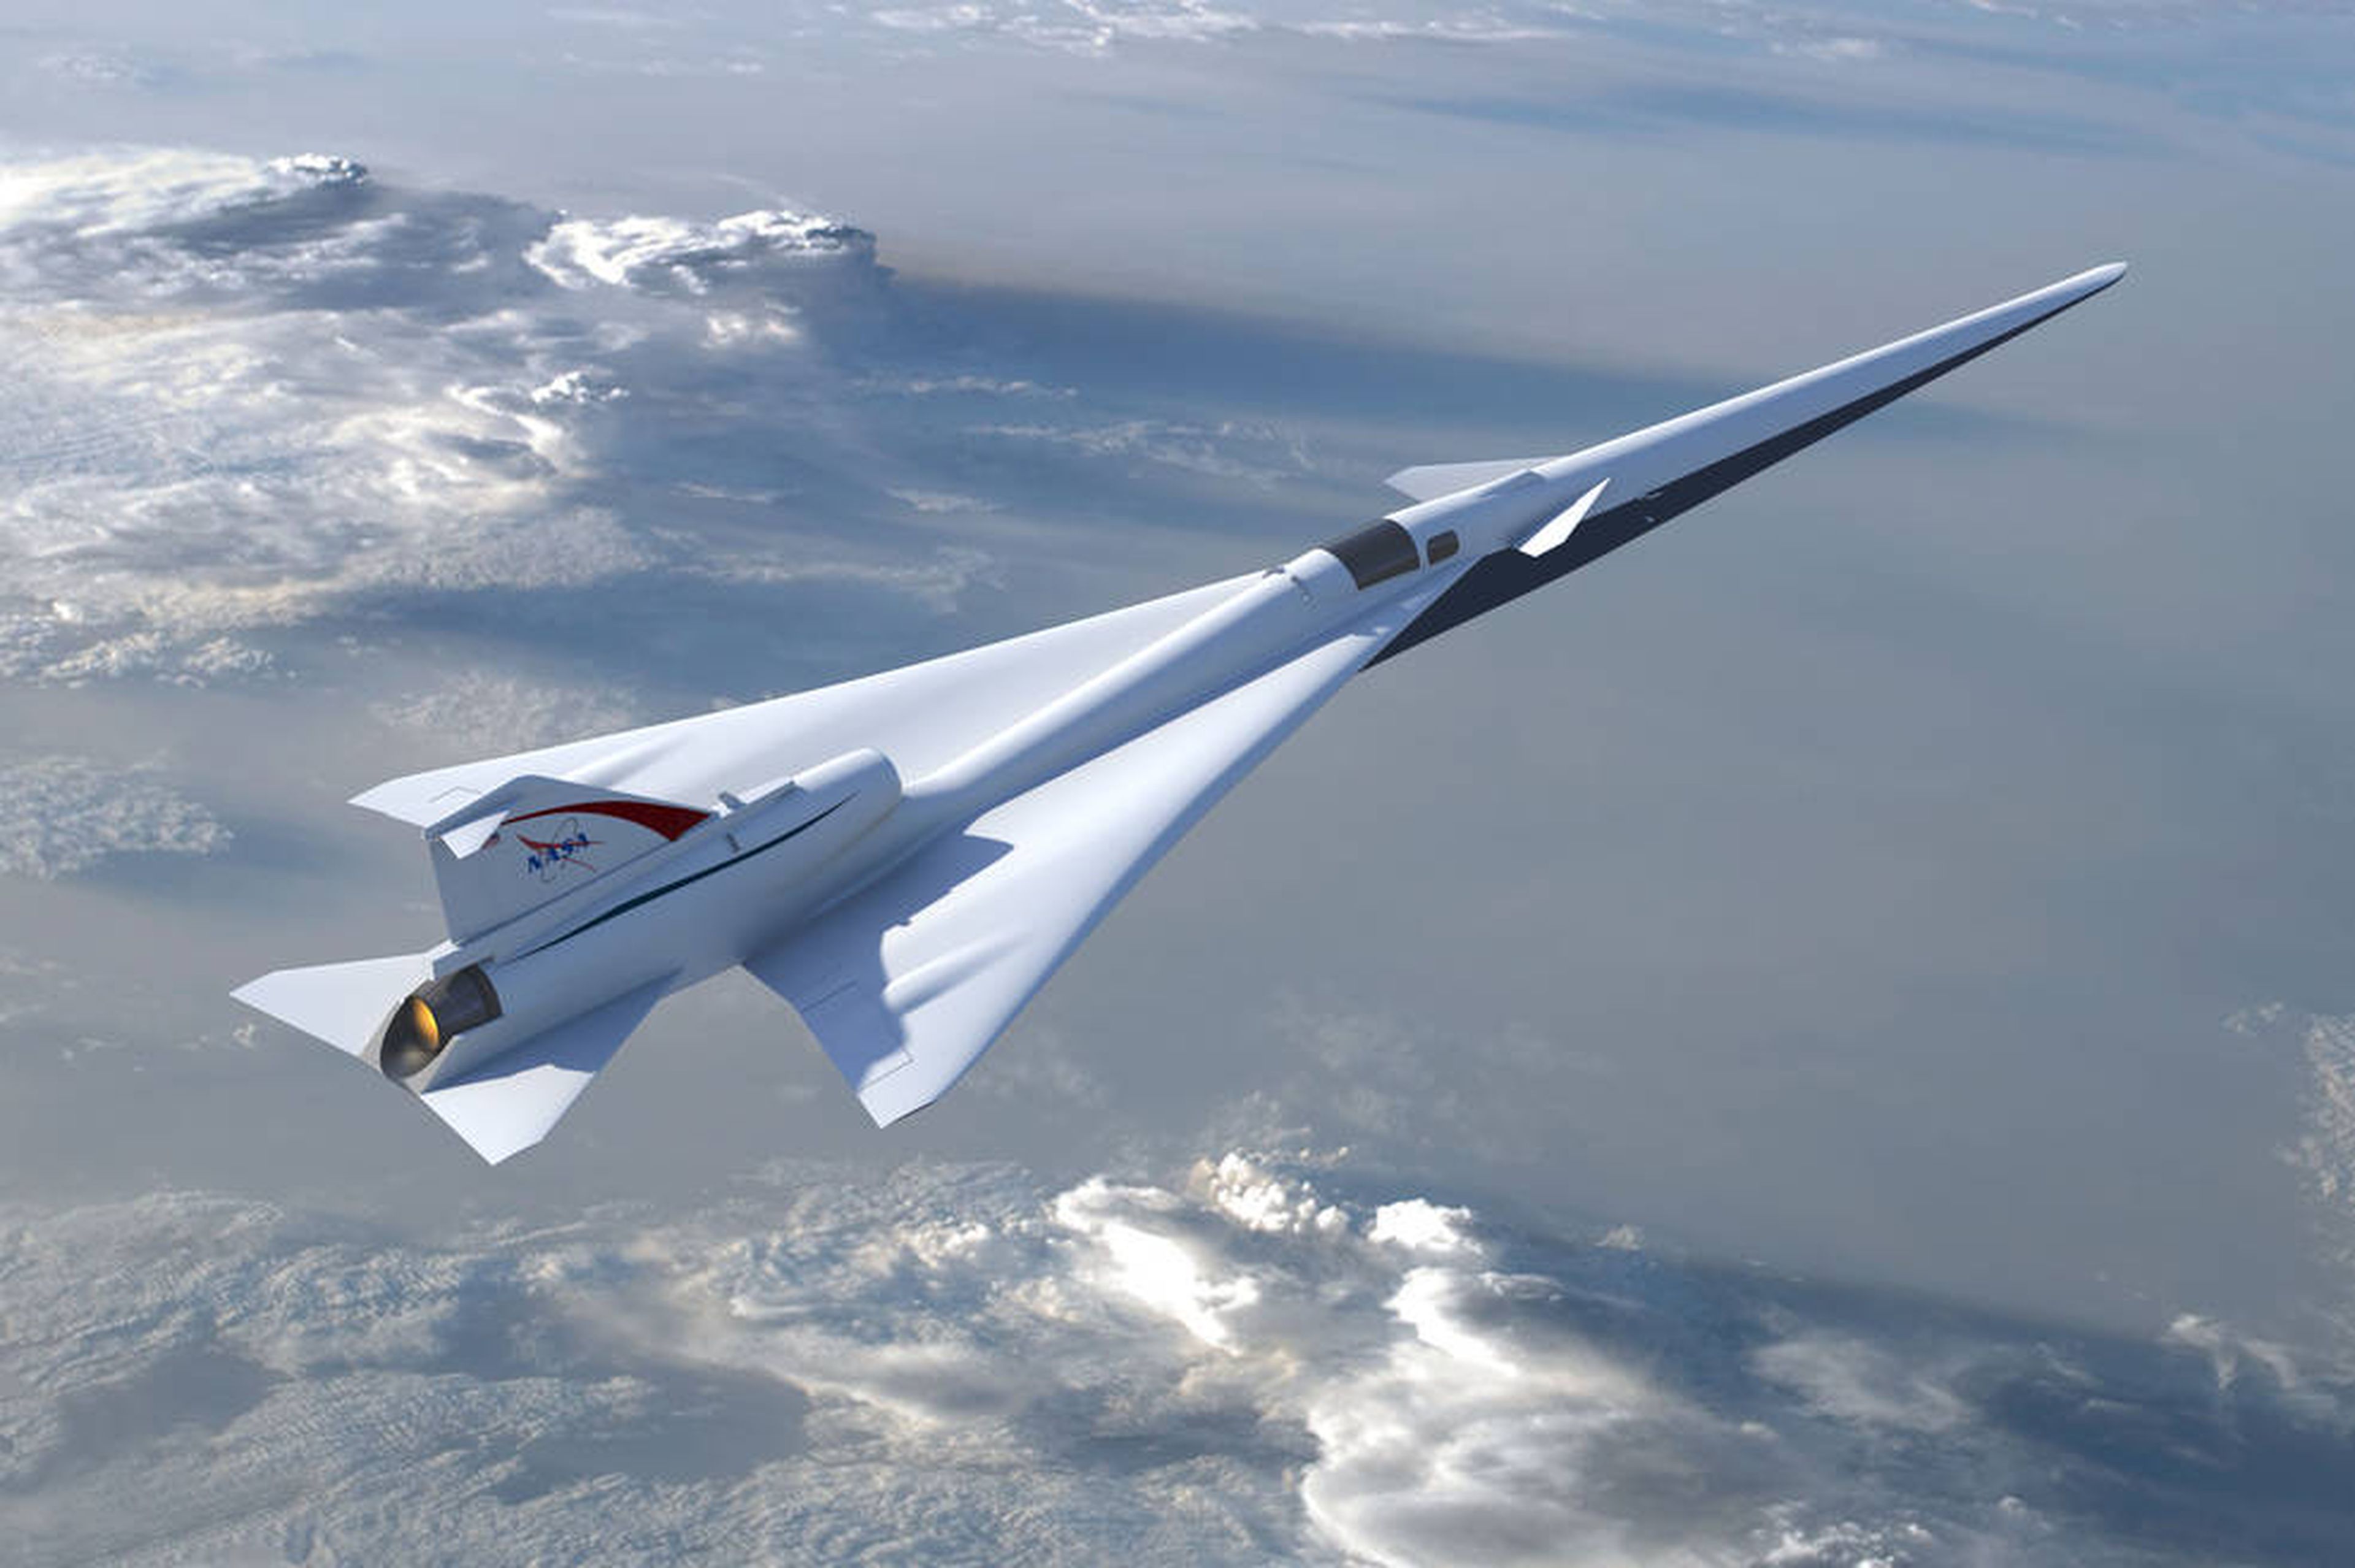 La NASA ha empezado a fabricar un avión supersónico para pasajeros